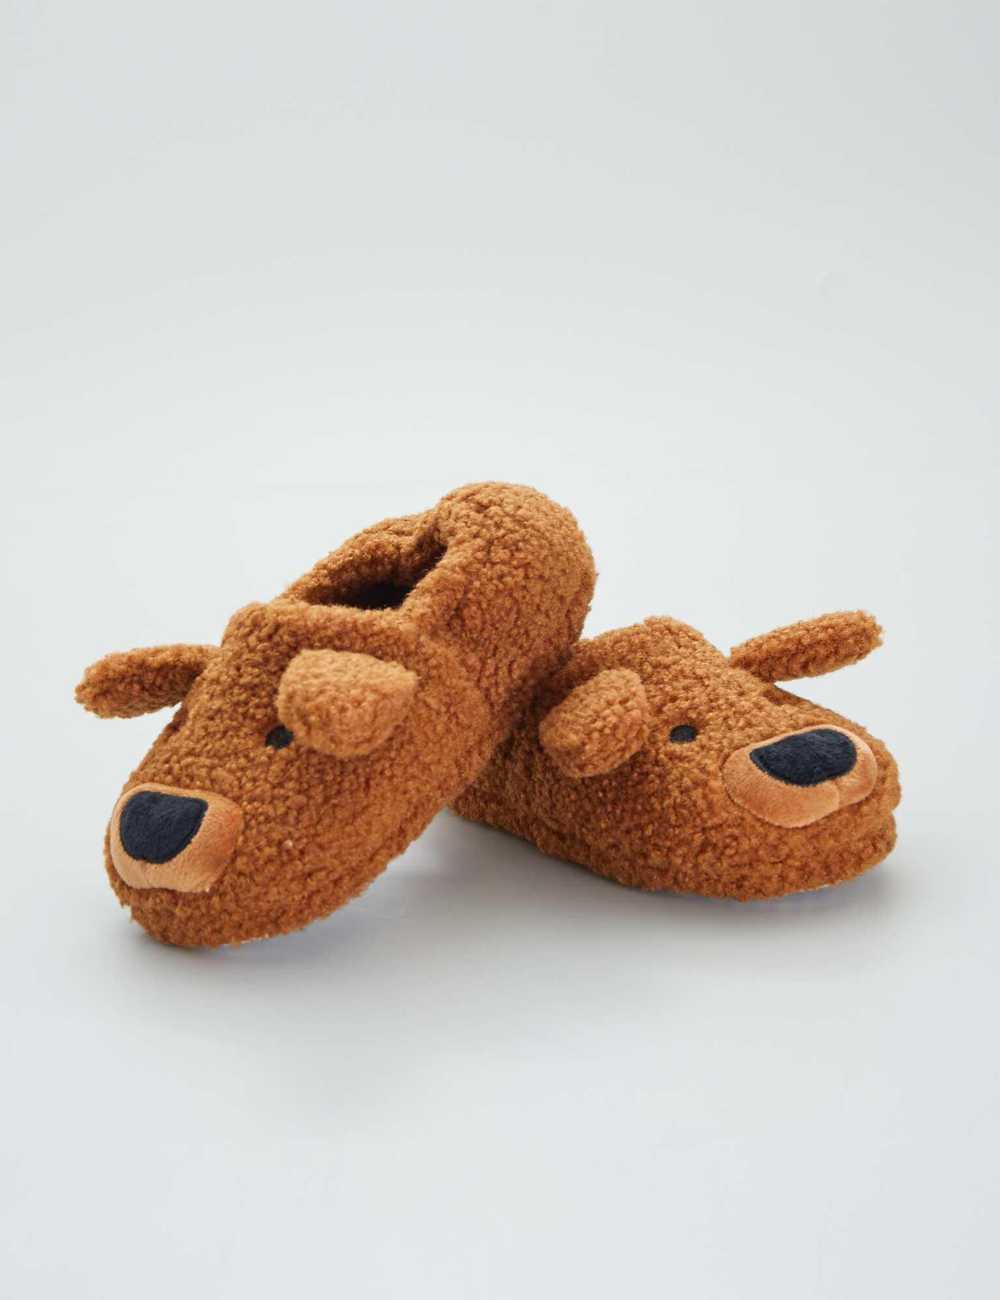 Custom Made Dog Slippers Shop - manna.com.sg 1695986870